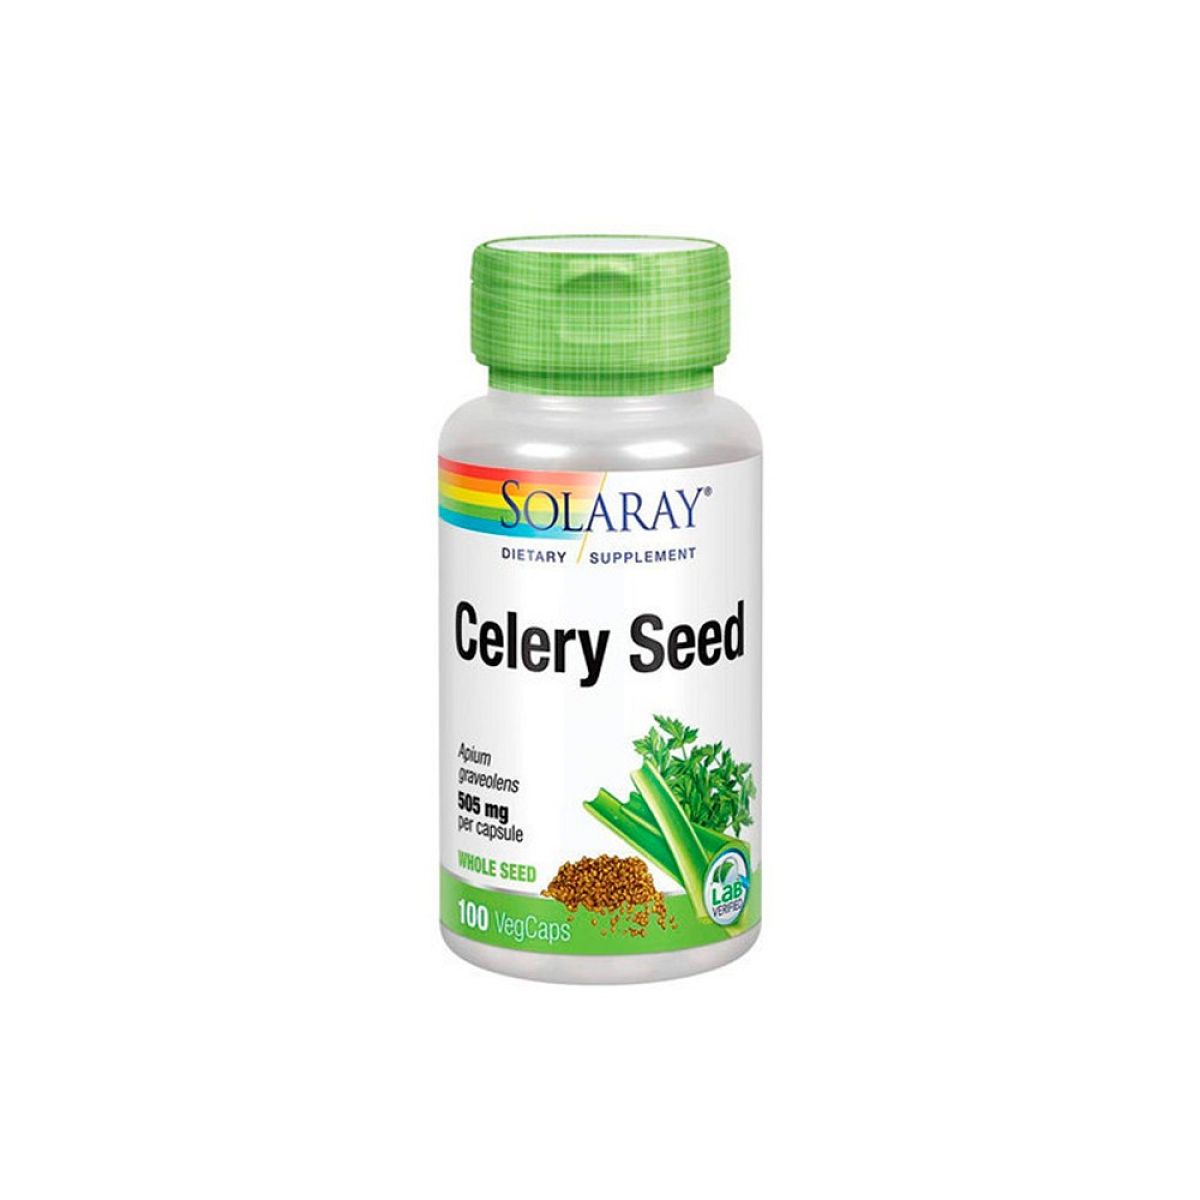 Solaray - Celery seed, 505mg